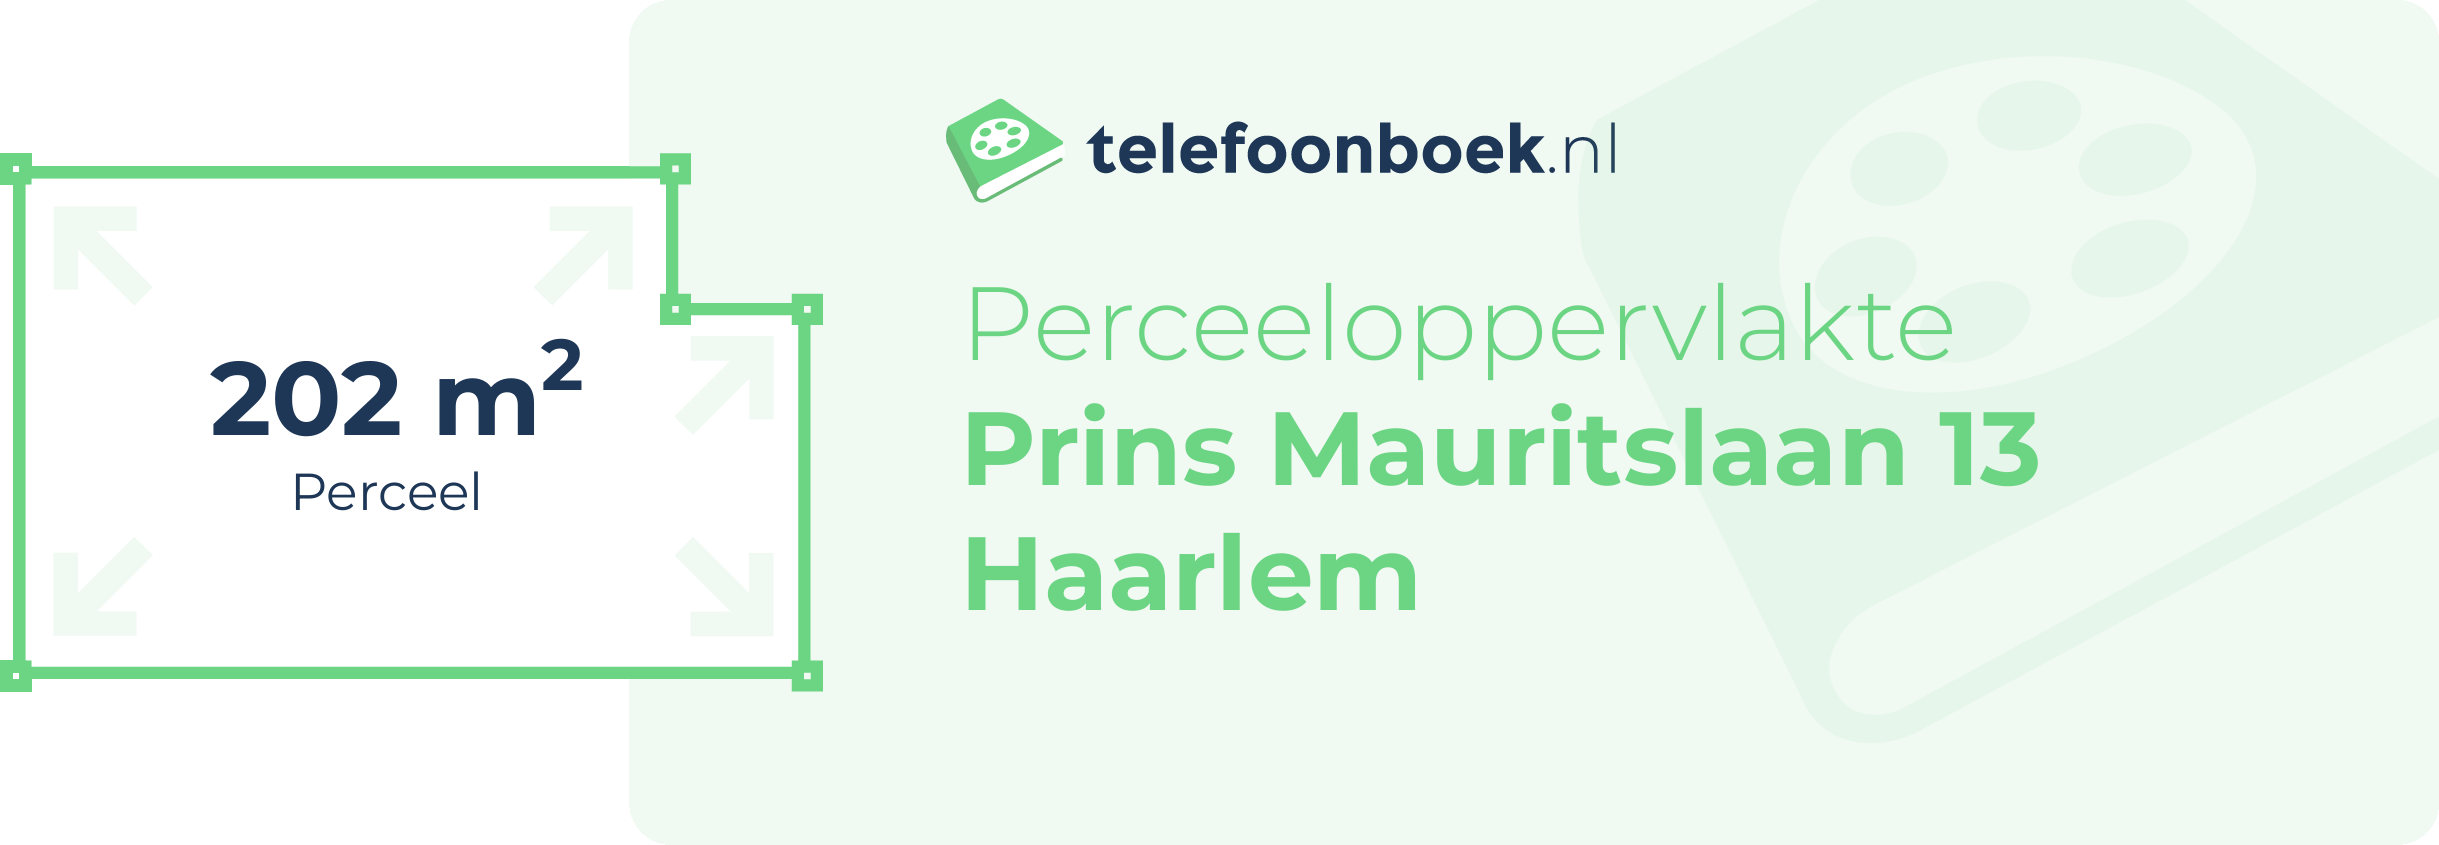 Perceeloppervlakte Prins Mauritslaan 13 Haarlem